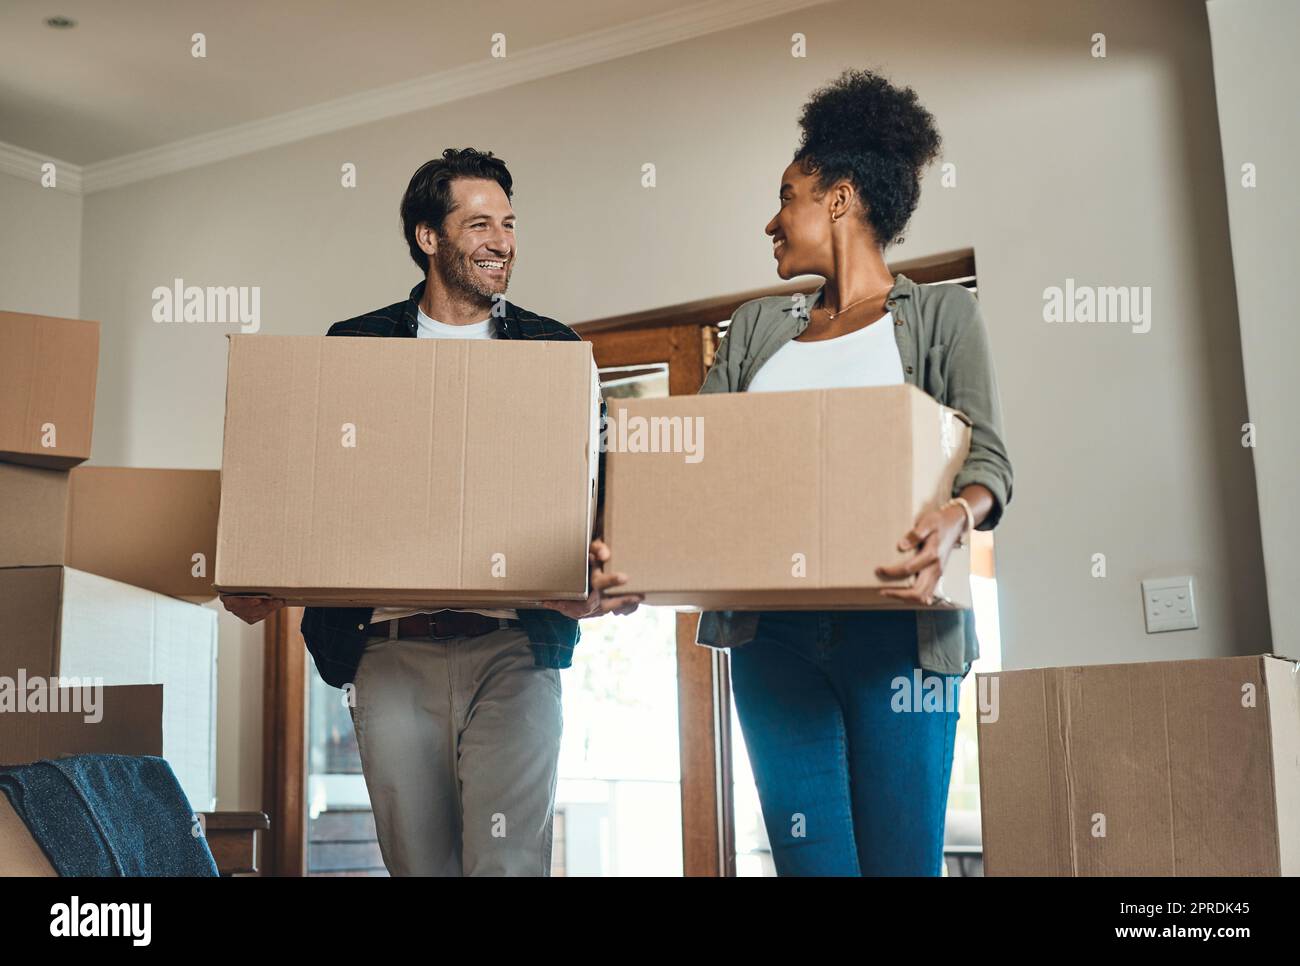 Coppie felici o nuovi proprietari di case che si trasferiscono insieme, trasportando scatole di mobili o oggetti personali e proprietà. Partner amorevoli e interrazziali dopo l'acquisto di immobili, sorridendo l'uno all'altro. Foto Stock